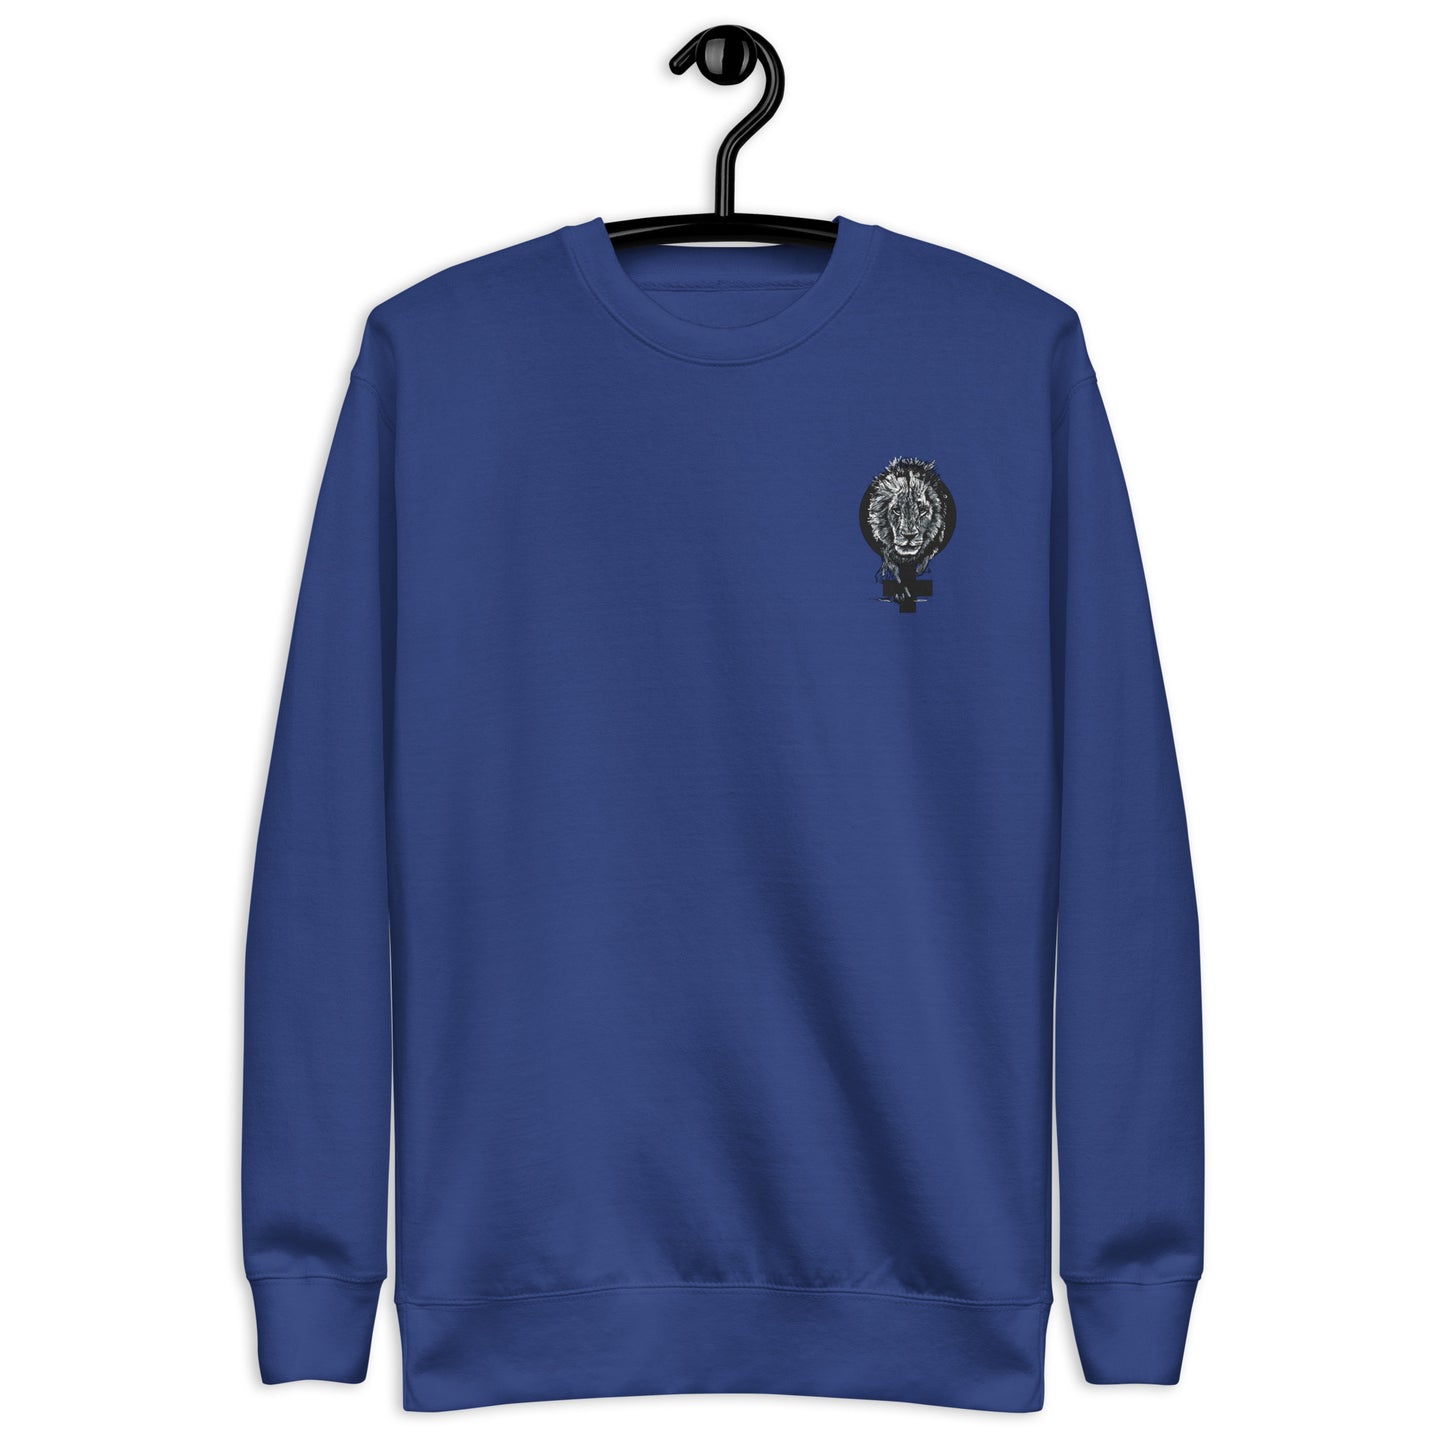 Feminism & Lion Embroidered Unisex Premium Sweatshirt